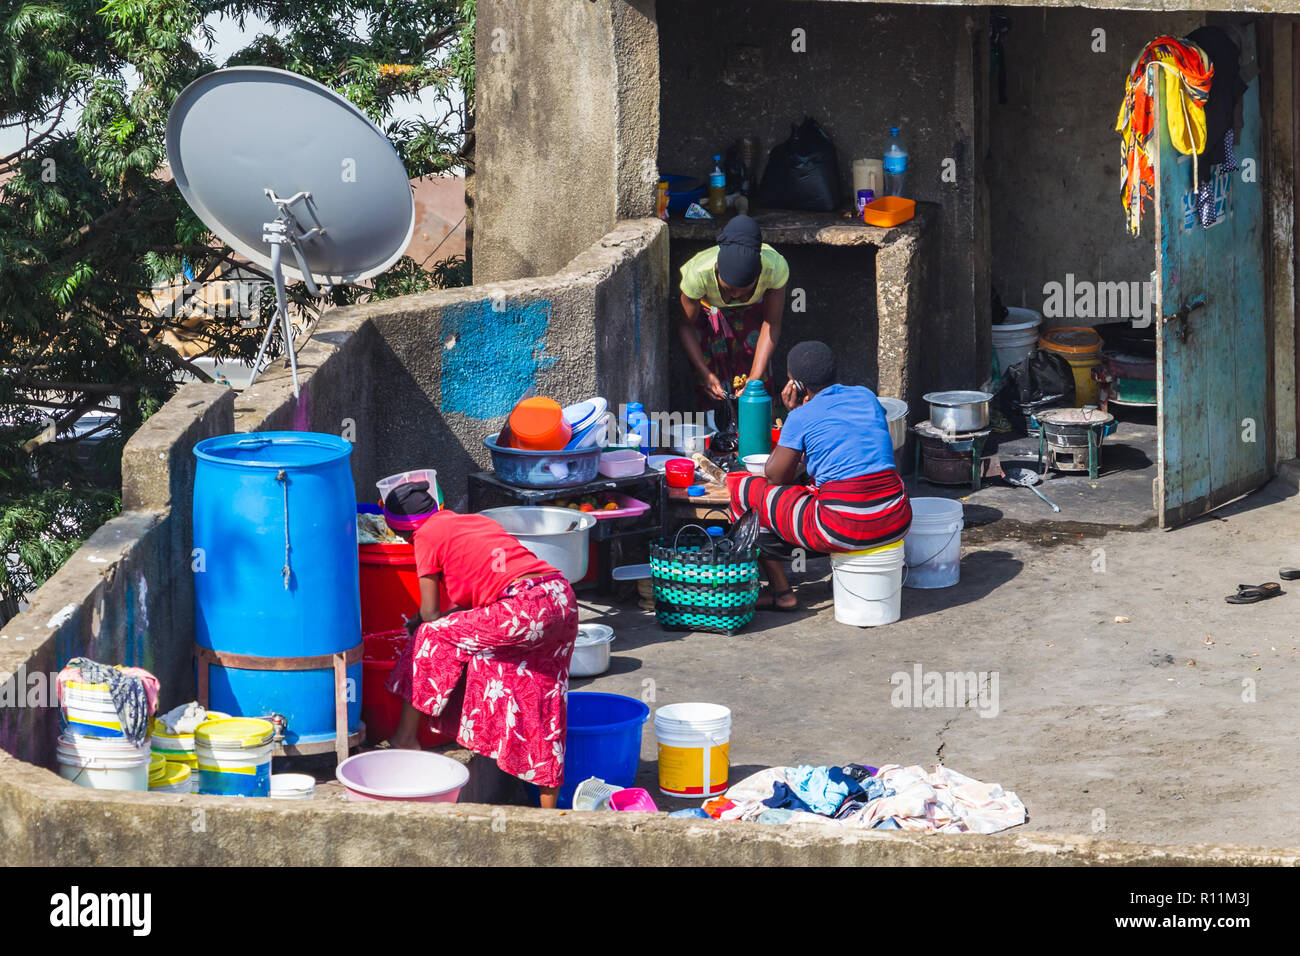 Daily life. Arusha, Tanzania. Stock Photo